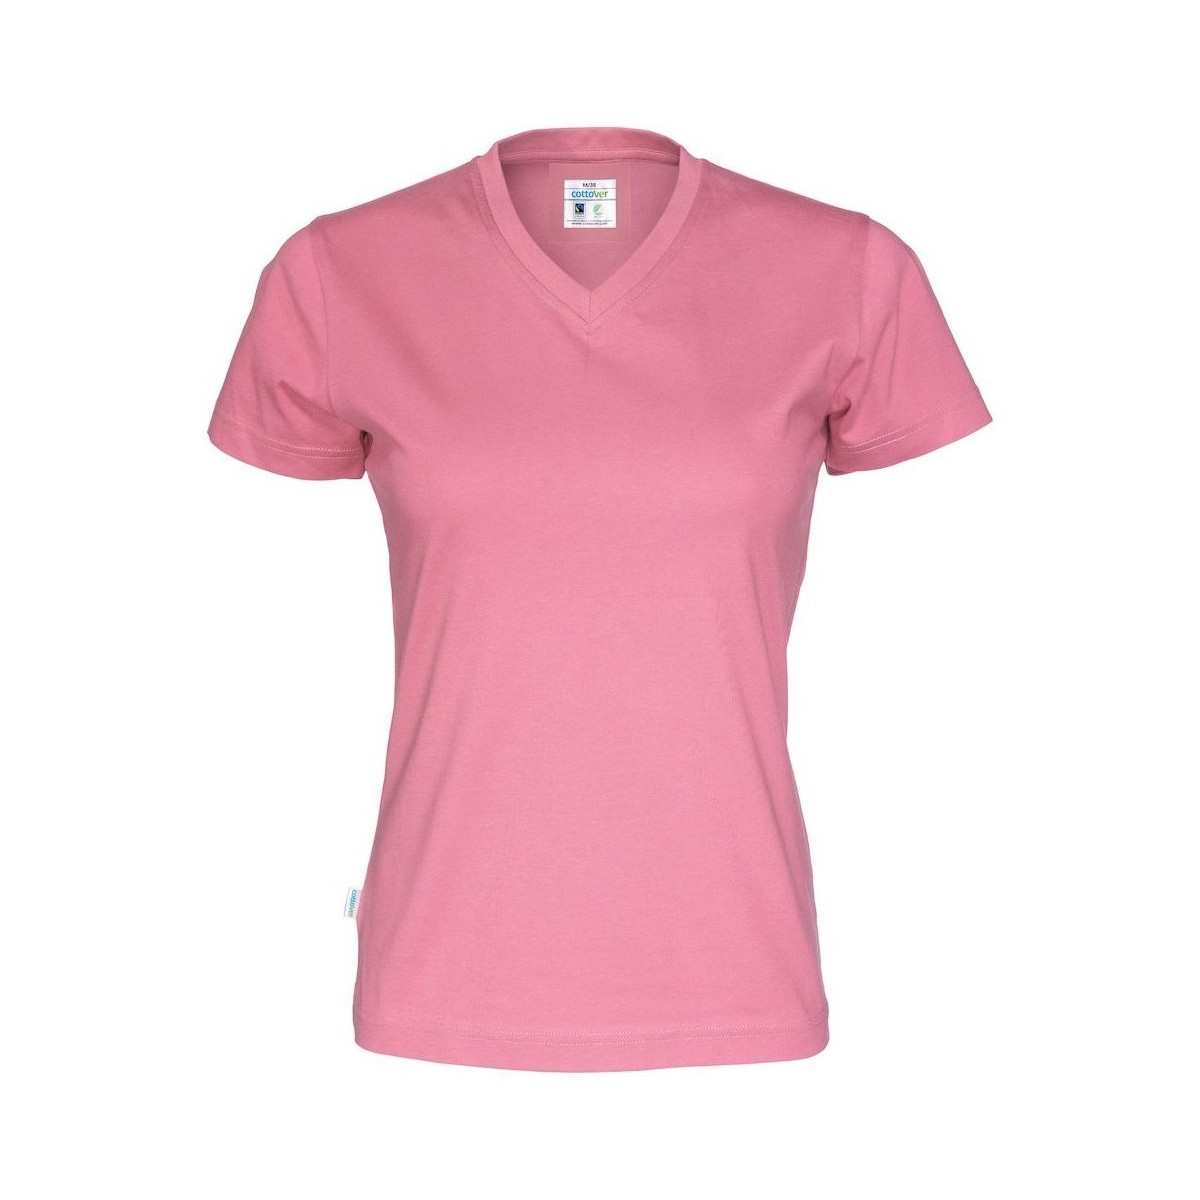 Vêtements Femme T-shirts manches longues Cottover UB229 Rouge